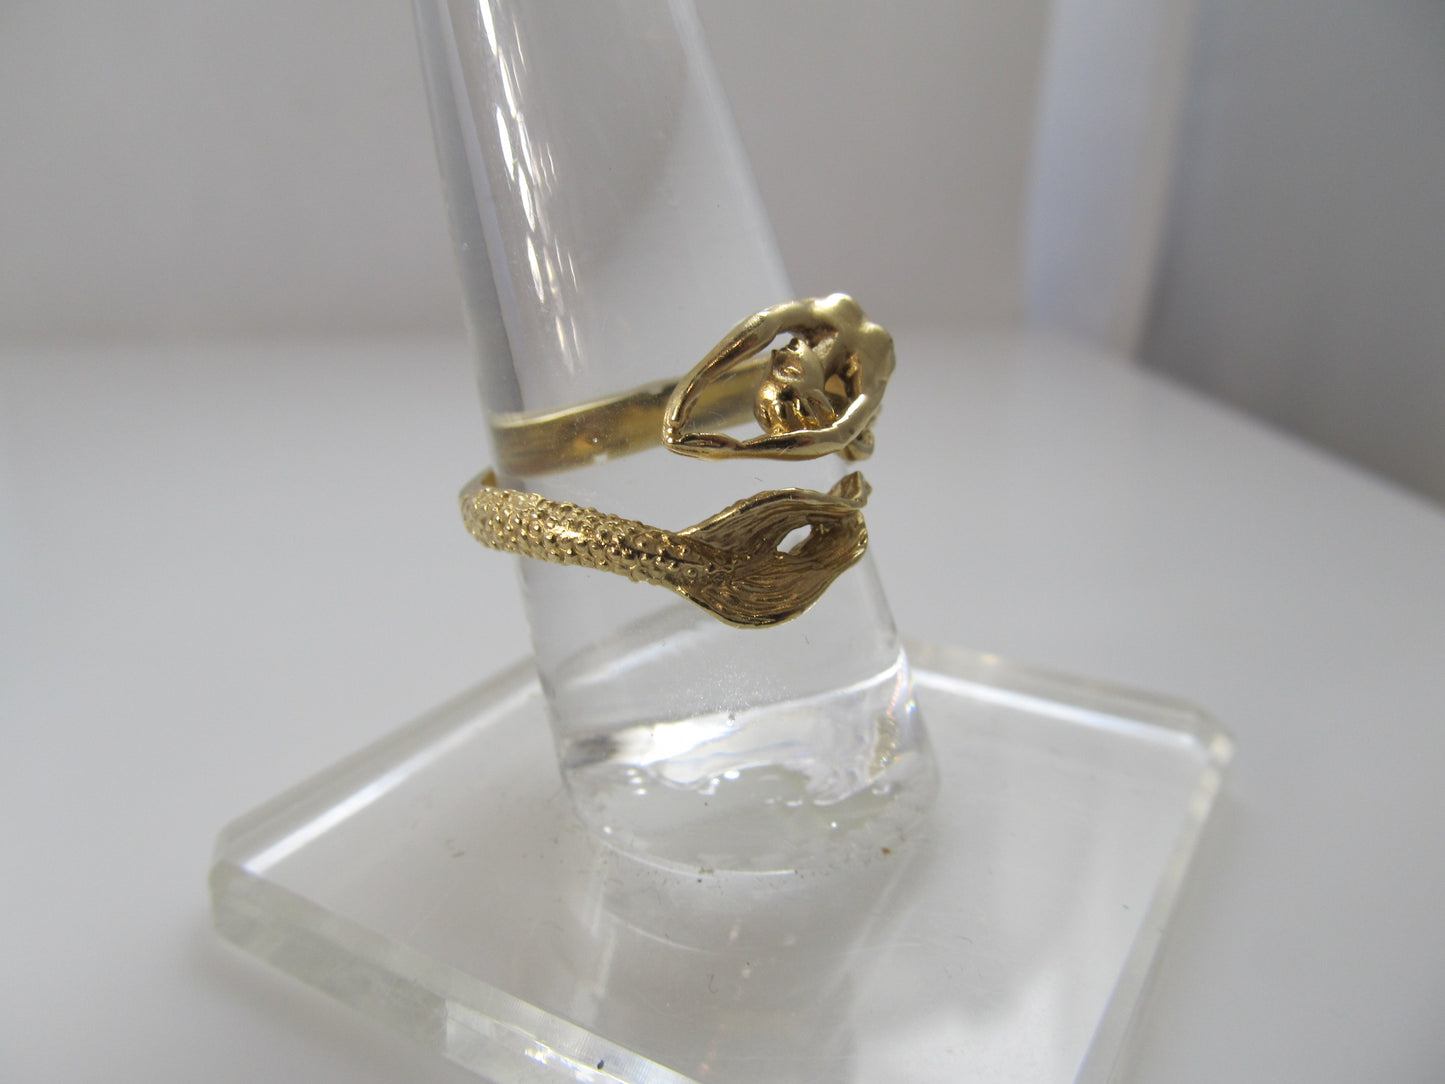 Detailed 14k yellow gold mermaid ring